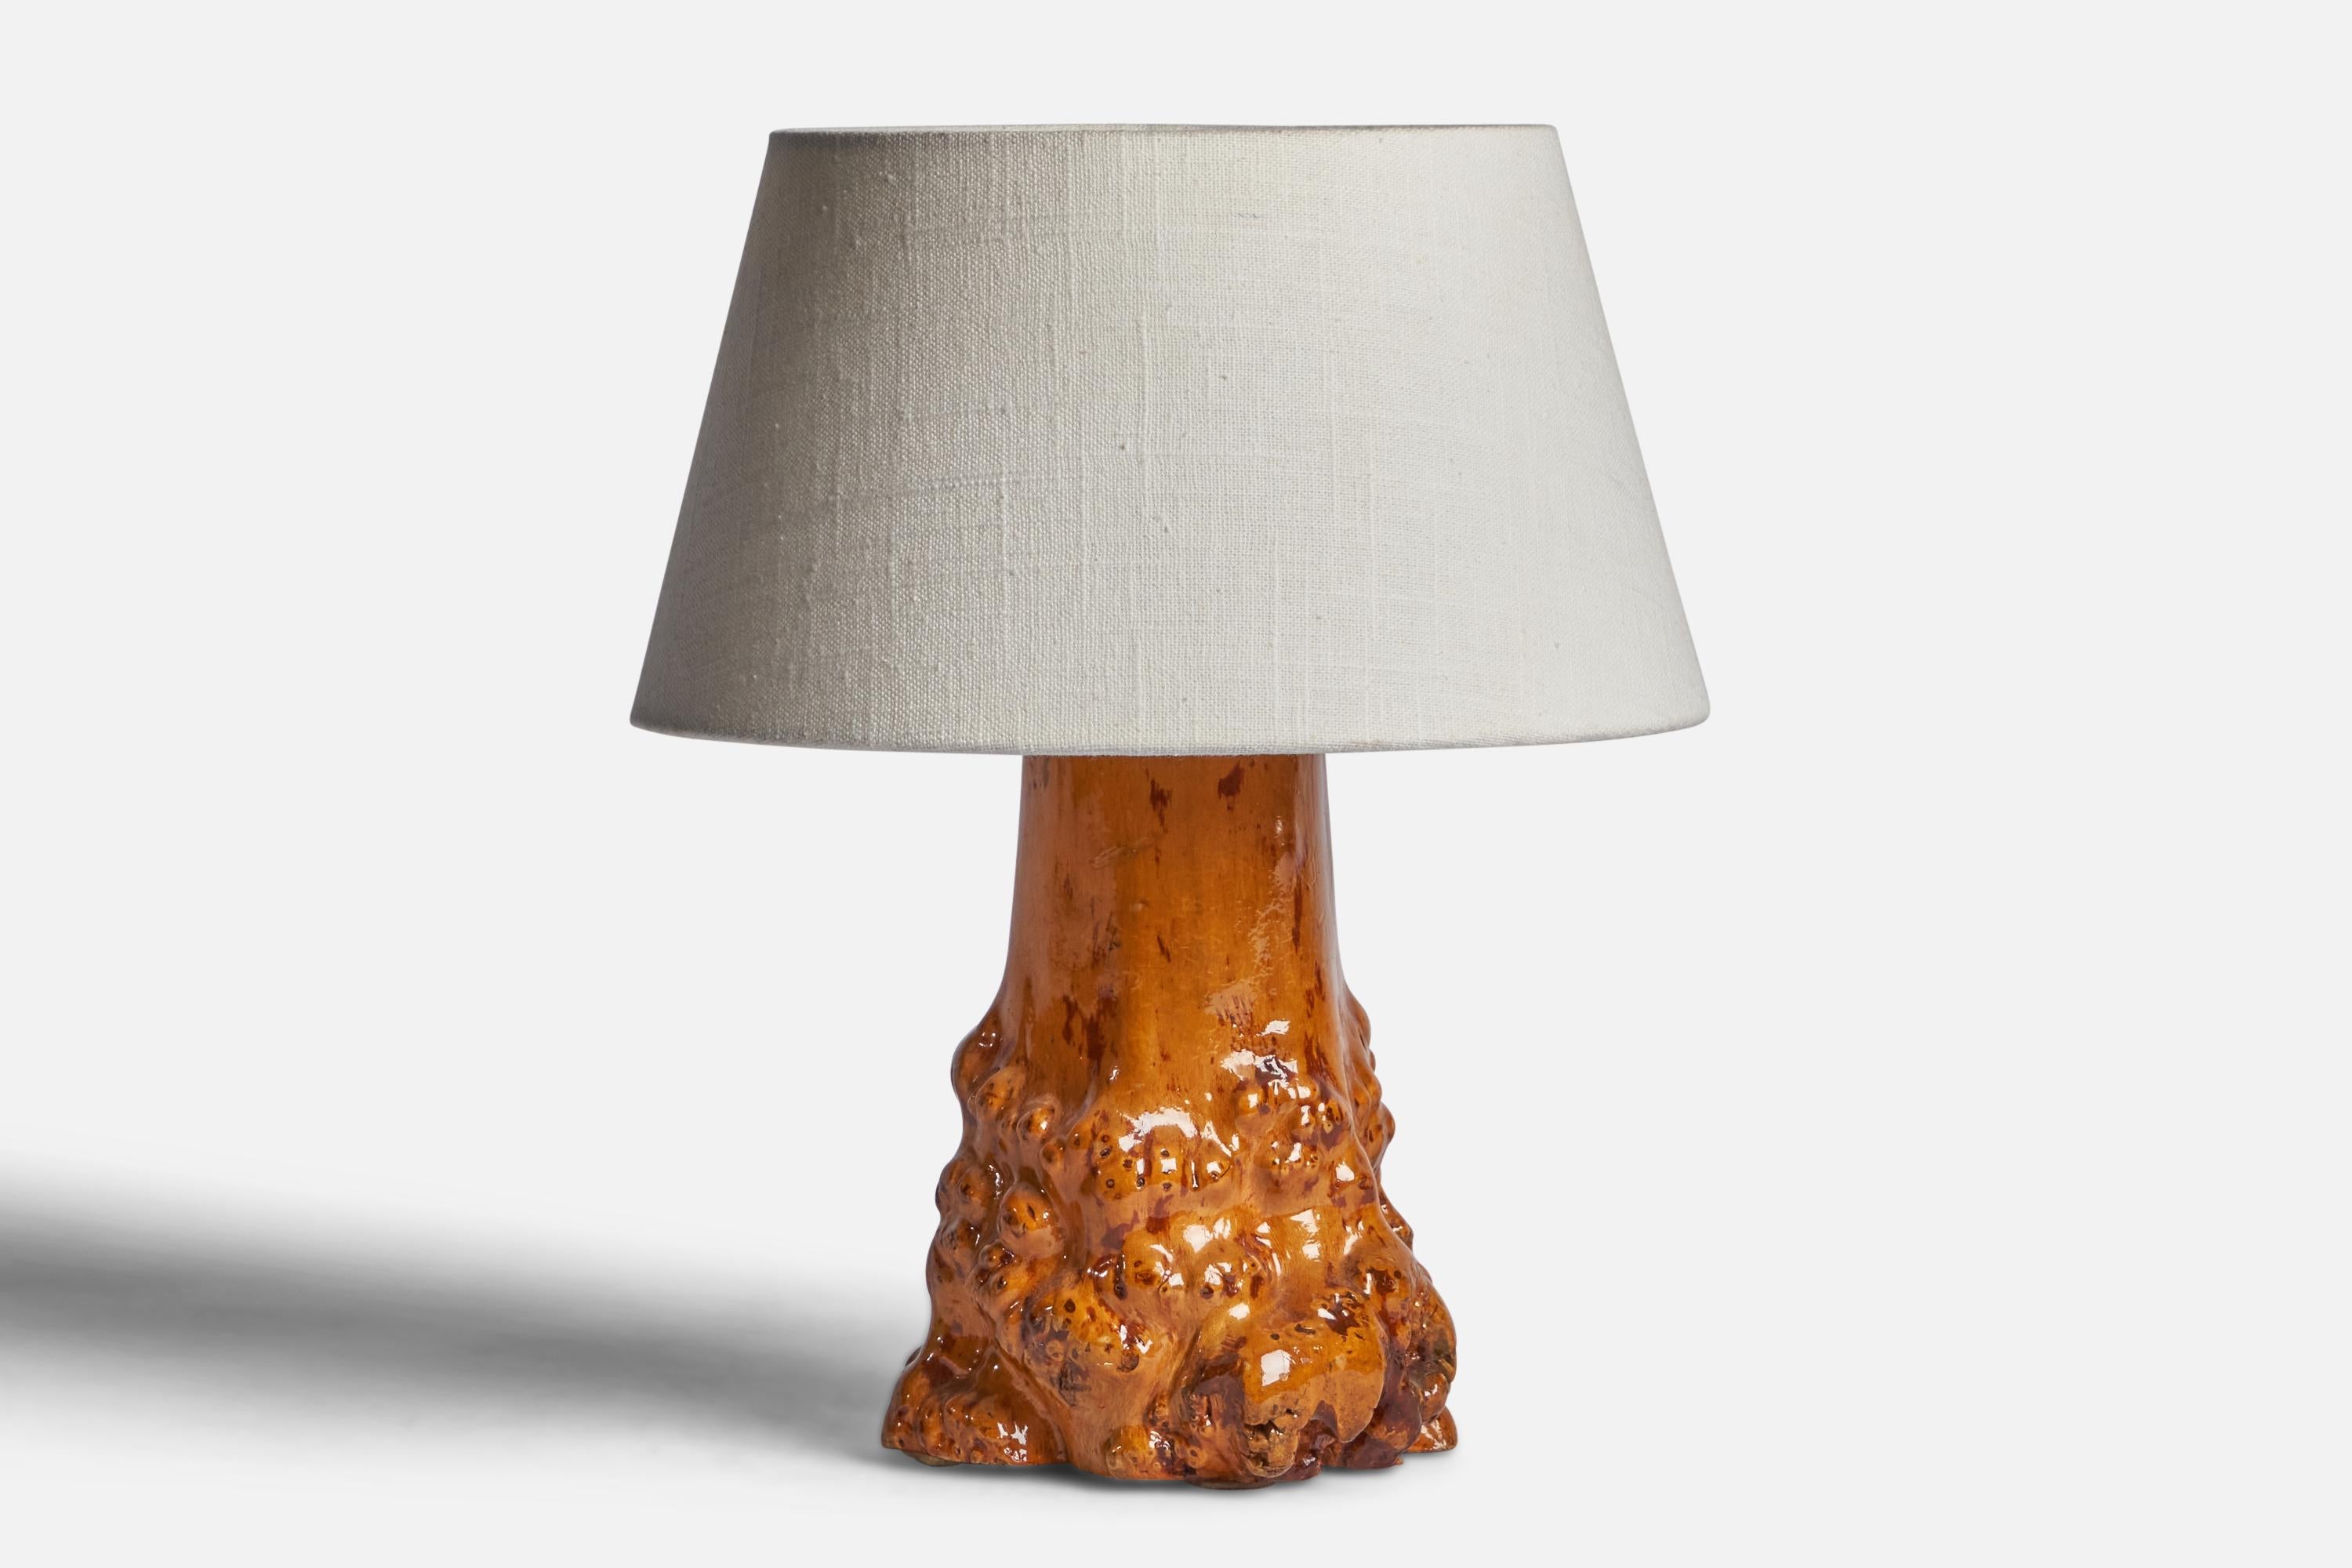 Lampe de table en bois de ronce, conçue et produite en Suède, C.C. 1940.

Dimensions de la lampe (pouces) : 9.65